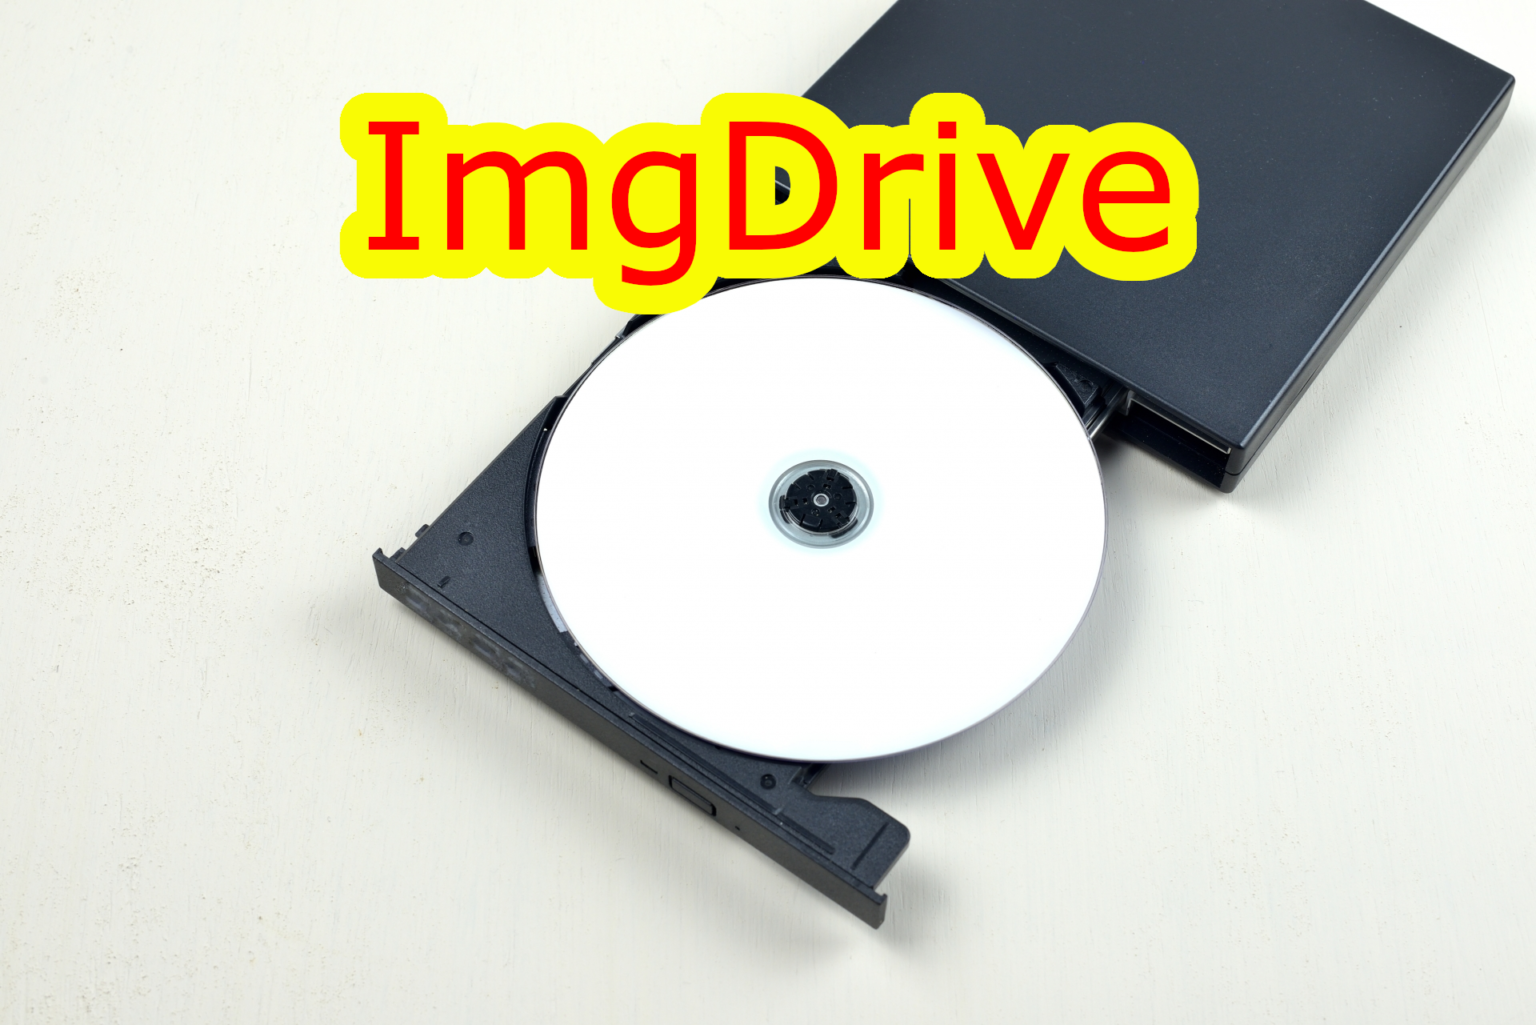 free ImgDrive 2.0.7.0